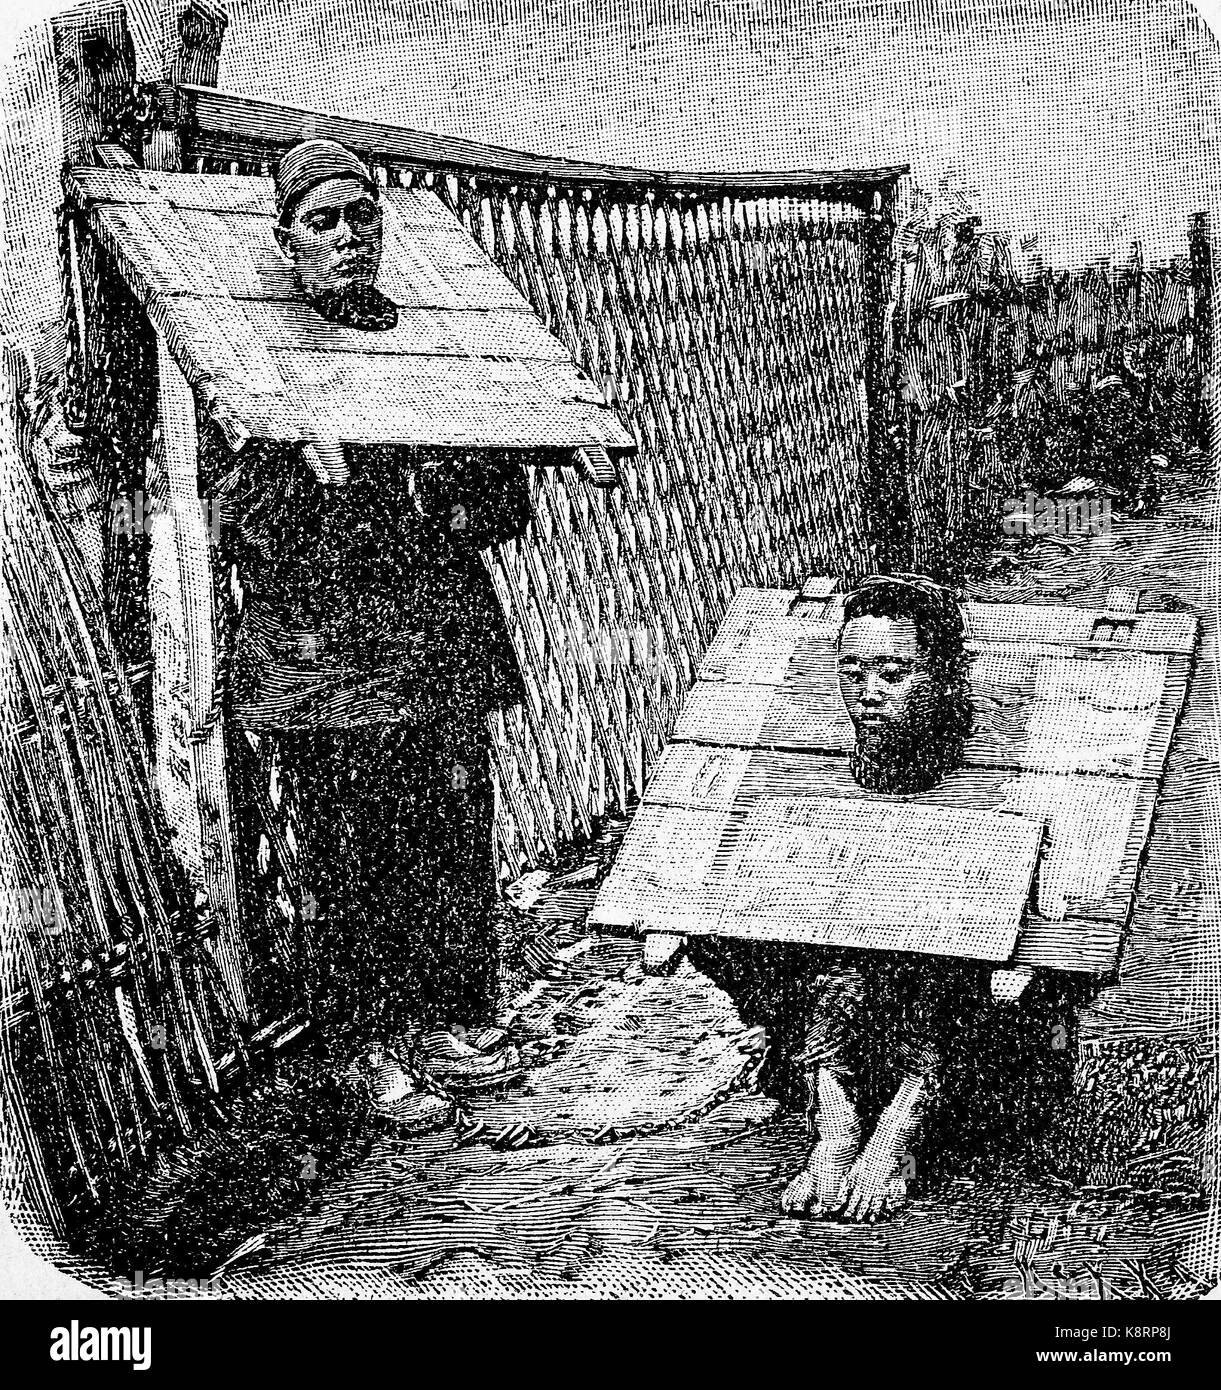 Bestrafung von Straftätern in China durch eine throatboard, Bestrafung von Verbrechern in China durch Halsbrett, digital verbesserte Reproduktion eines Holzschnitt, im 19. Jahrhundert veröffentlicht. Stockfoto